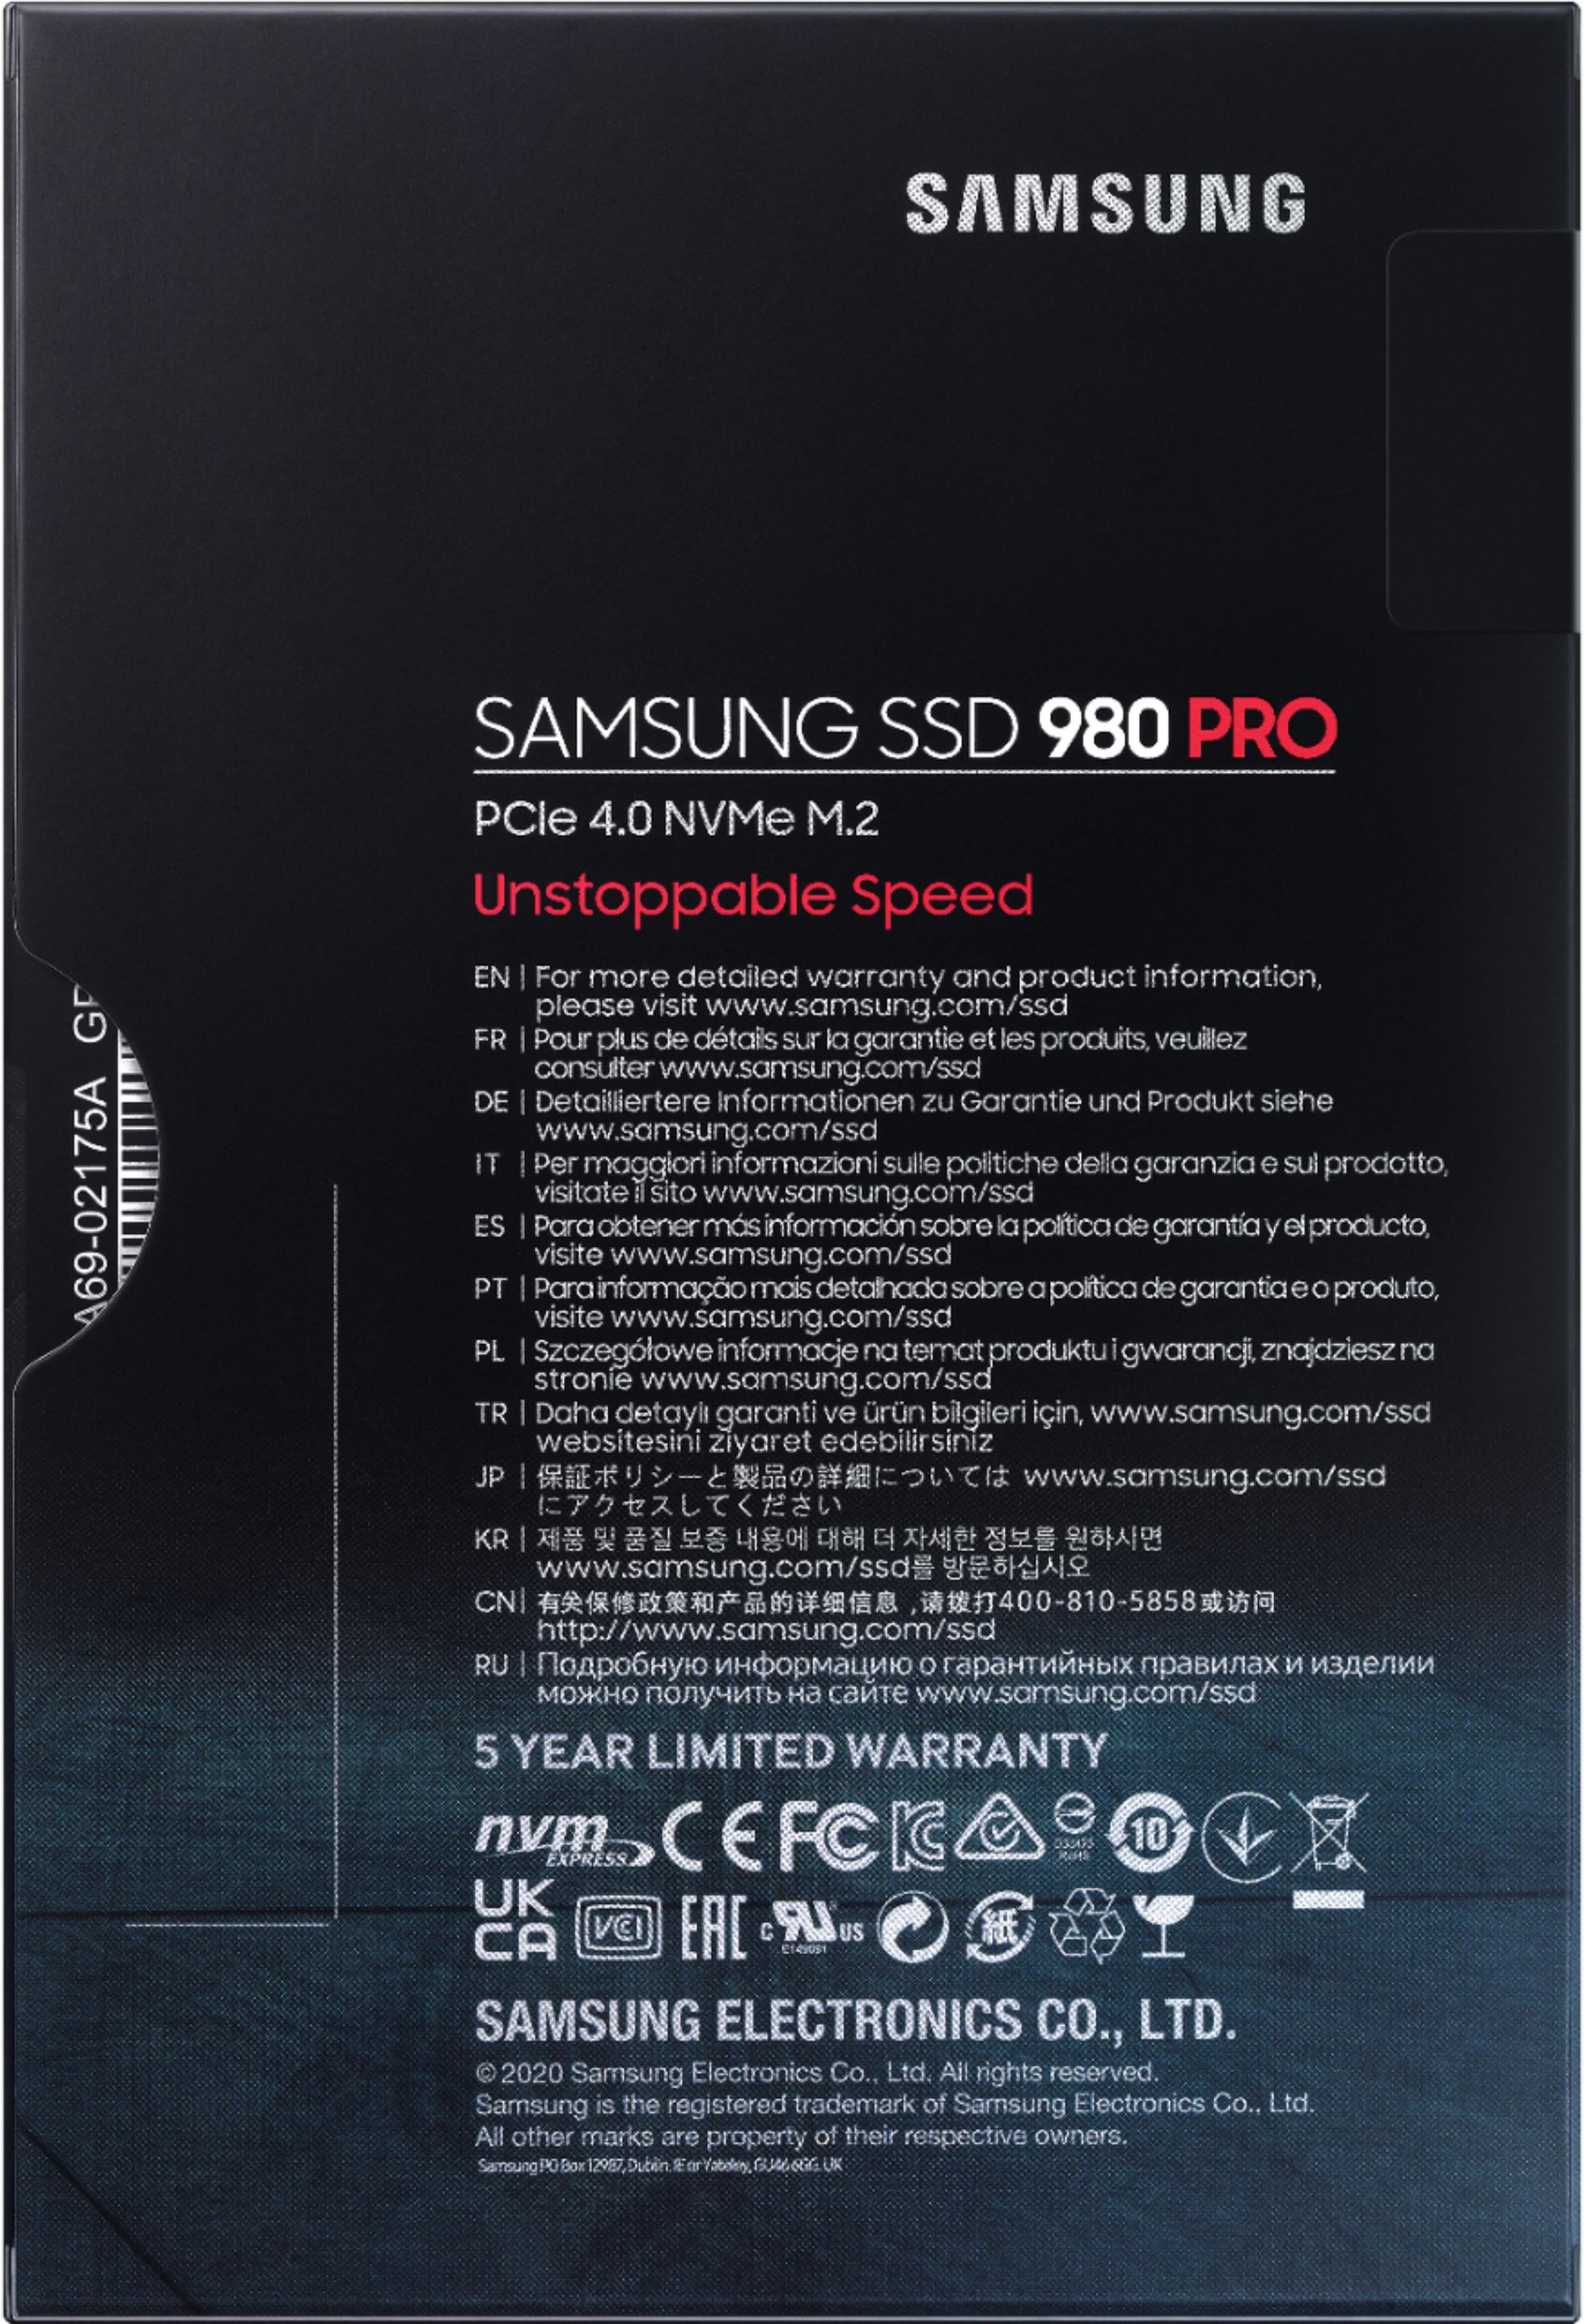 Samsung 980 PRO Heatsink 2TB Internal SSD PCIe Gen 4 x4 NVMe for PS5  MZ-V8P2T0CW - Best Buy